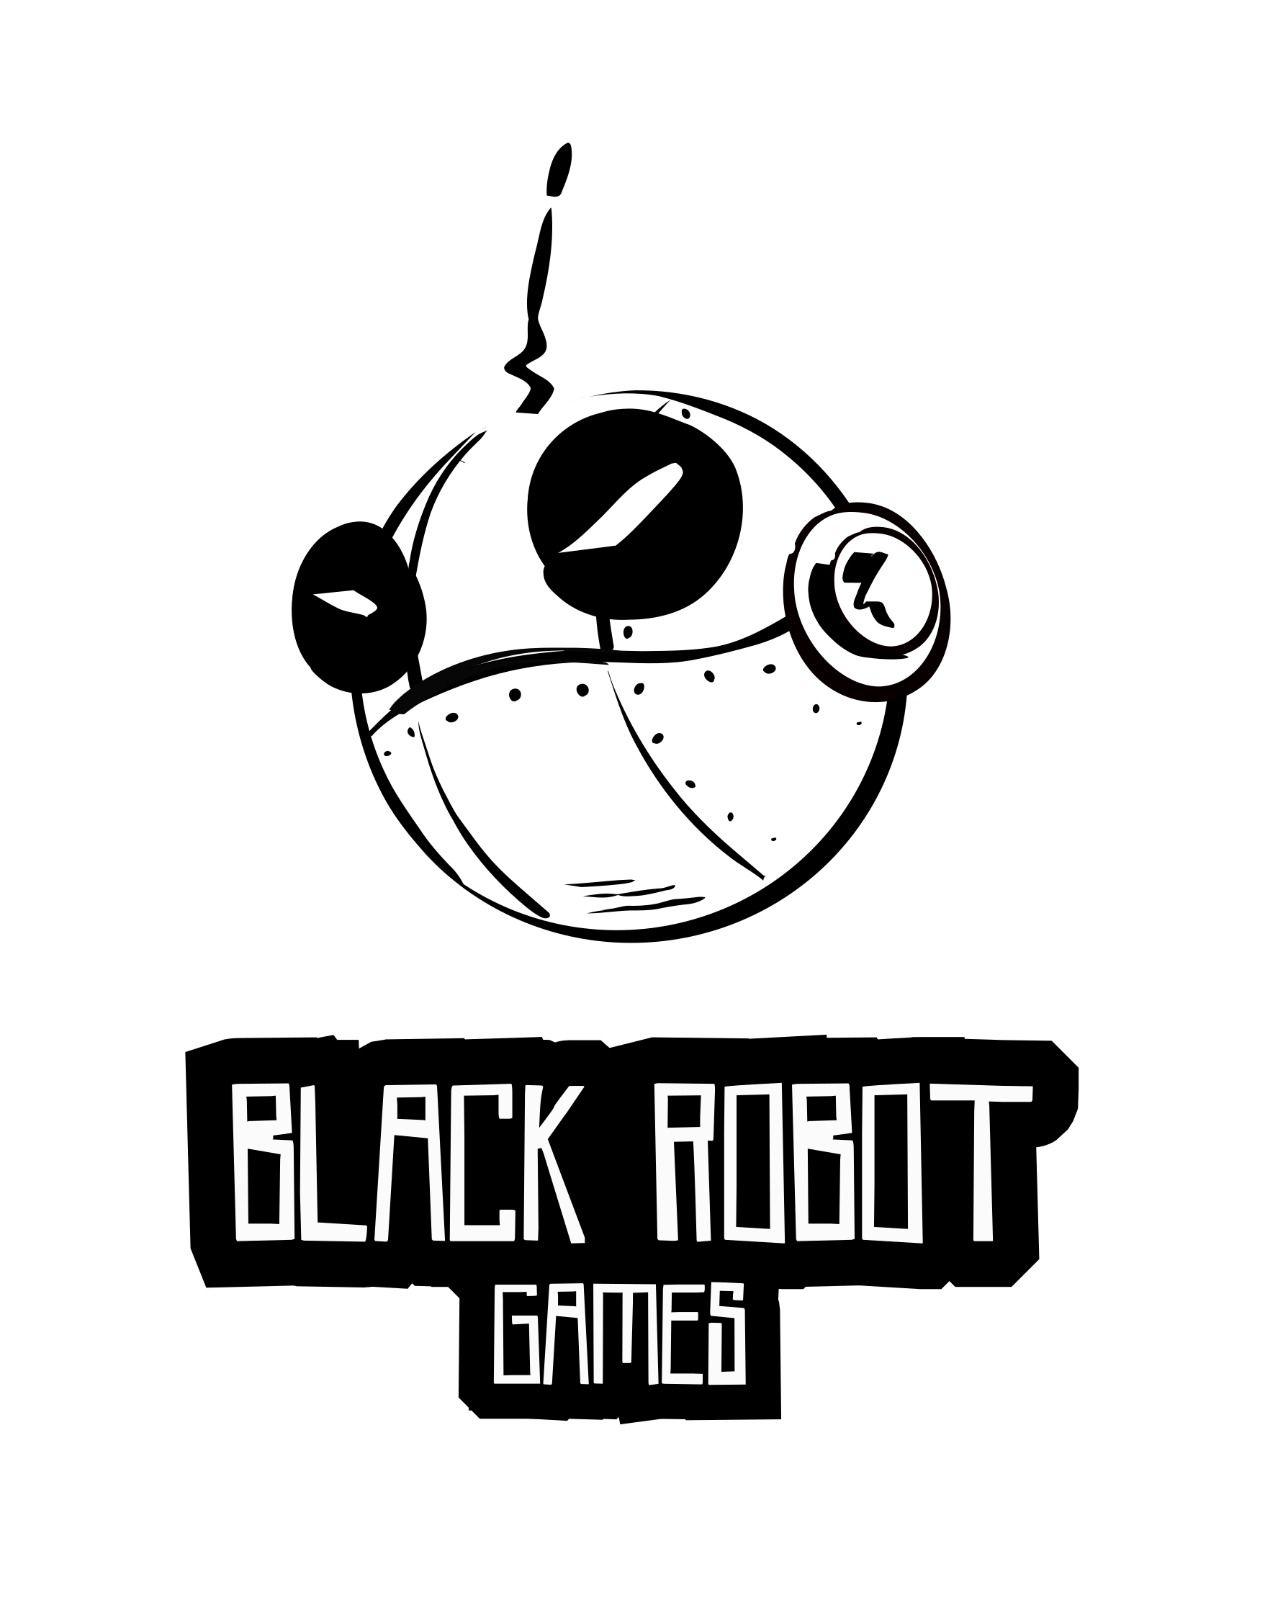 Black Robot Logo - Black Robot Games logo thoughts? : logodesign